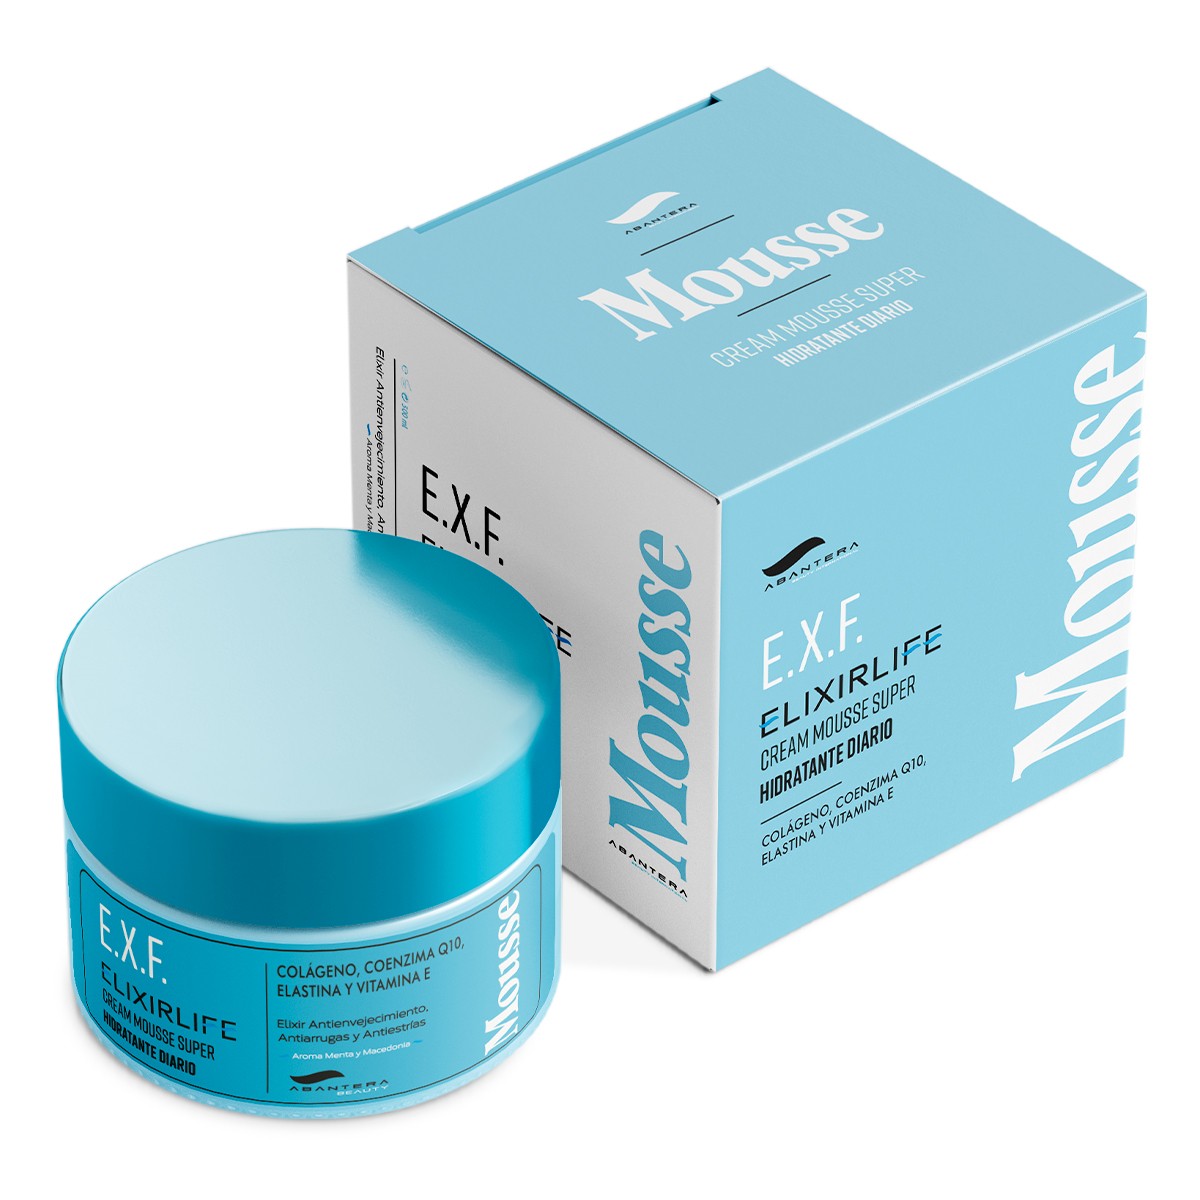 Crema E.X.F. Elixirlife - Cream Mousse 300gr Antienvejecimiento, Antiarrugas y Antiestrias con Aroma Menta y Macedonia